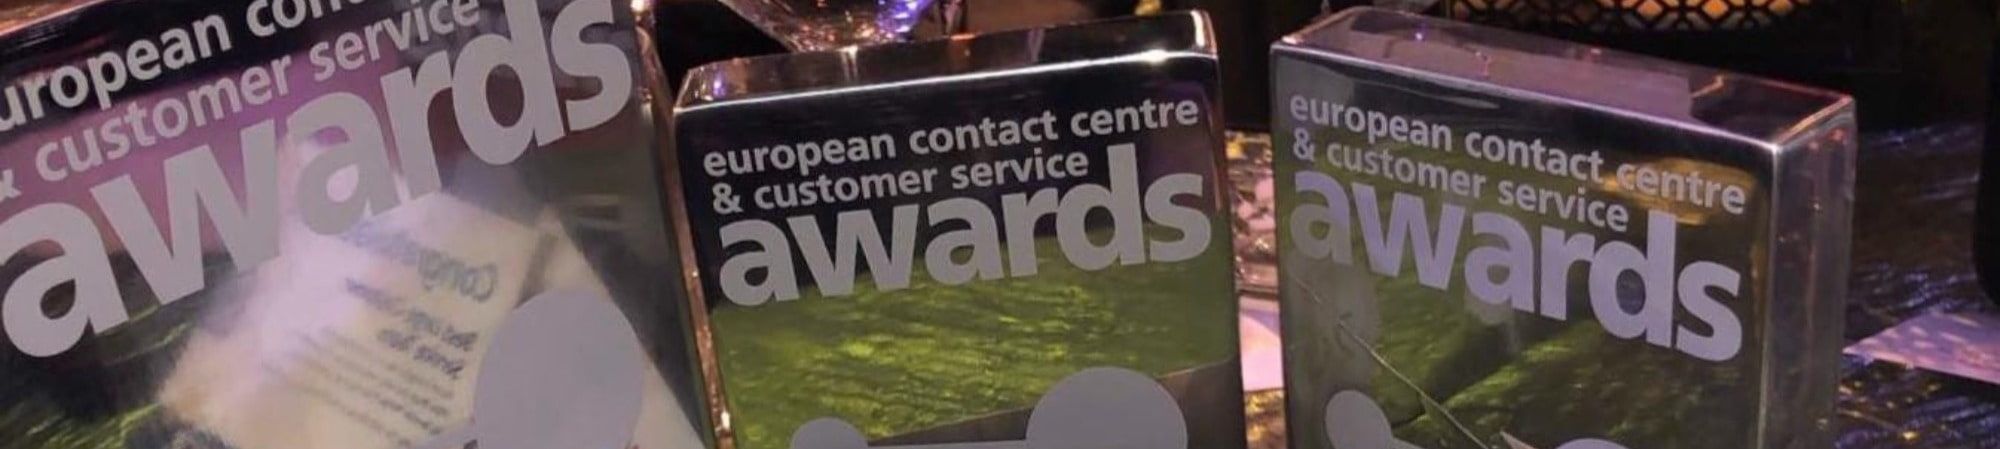 European contact centre awards